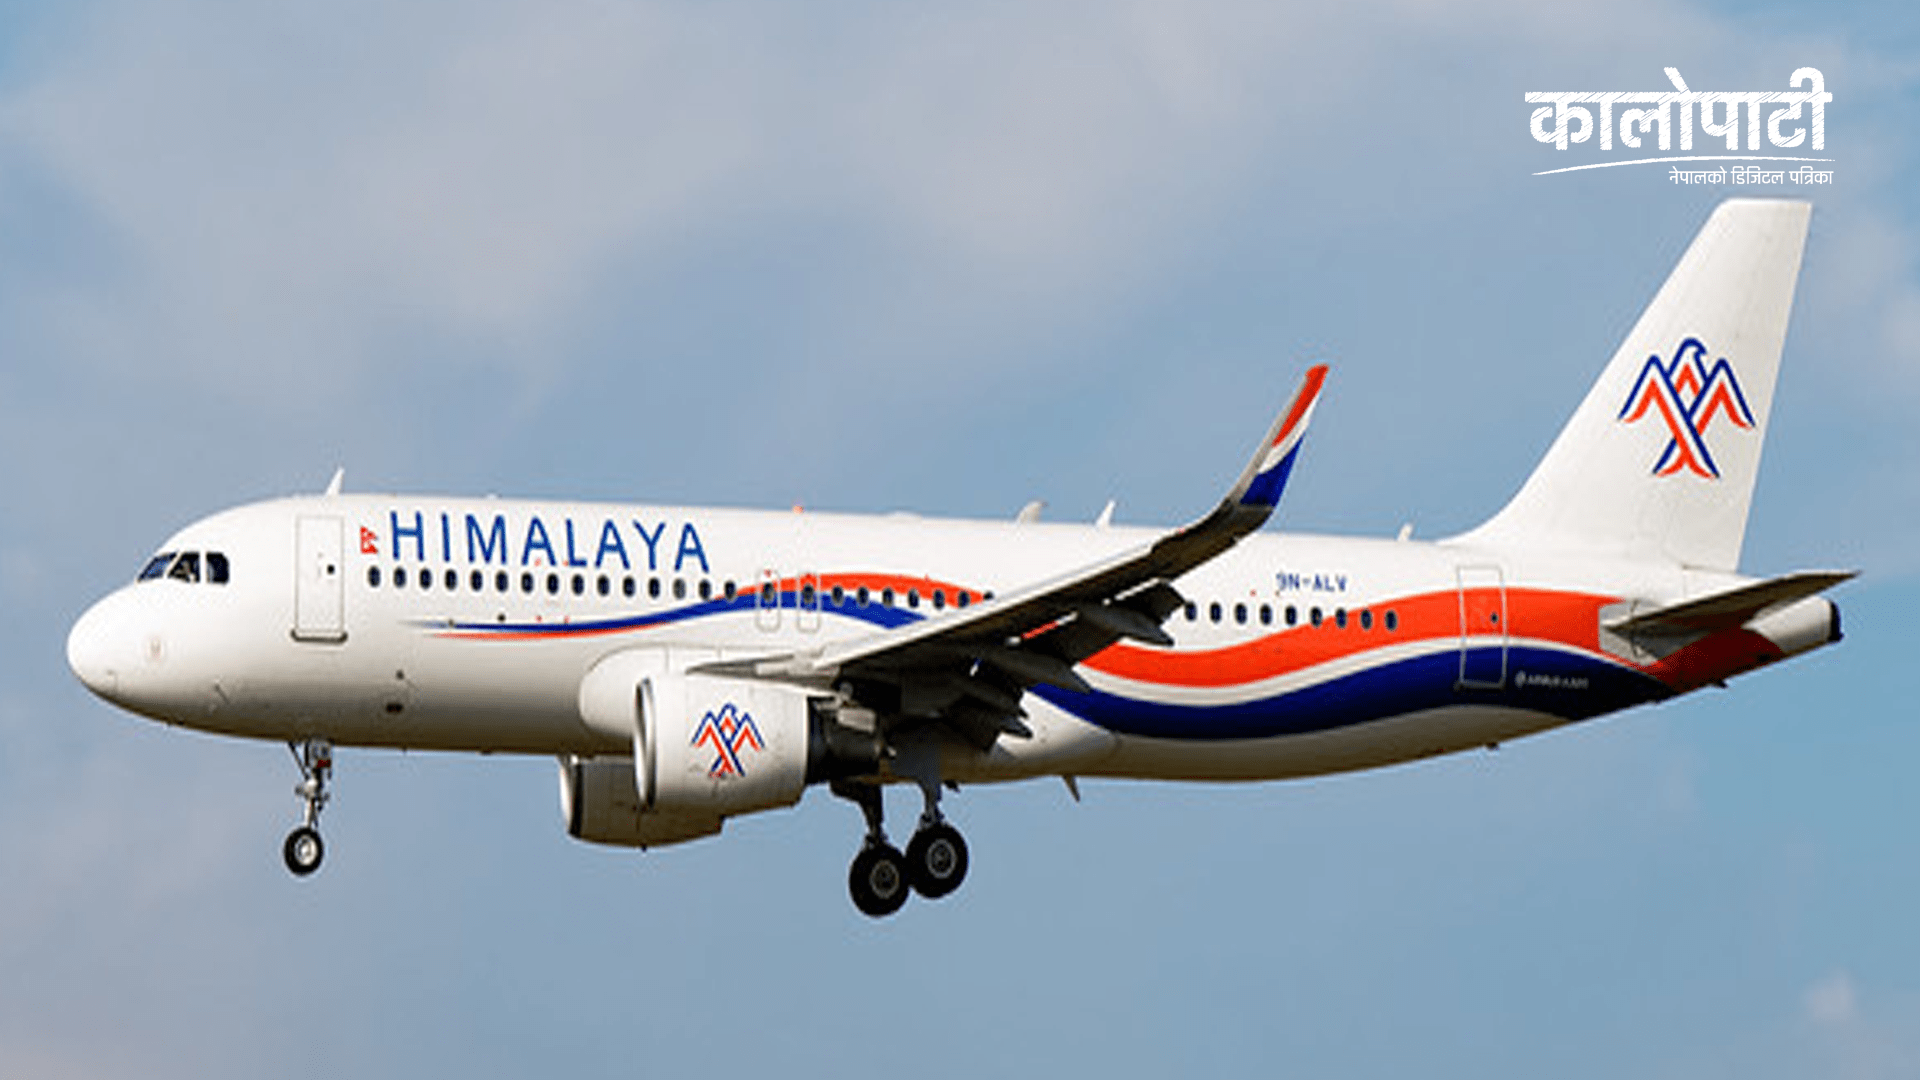 हिमालय एयरलाइन्सलाले प्राप्त गर्यो ‘आयोसा’ प्रमाणपत्र